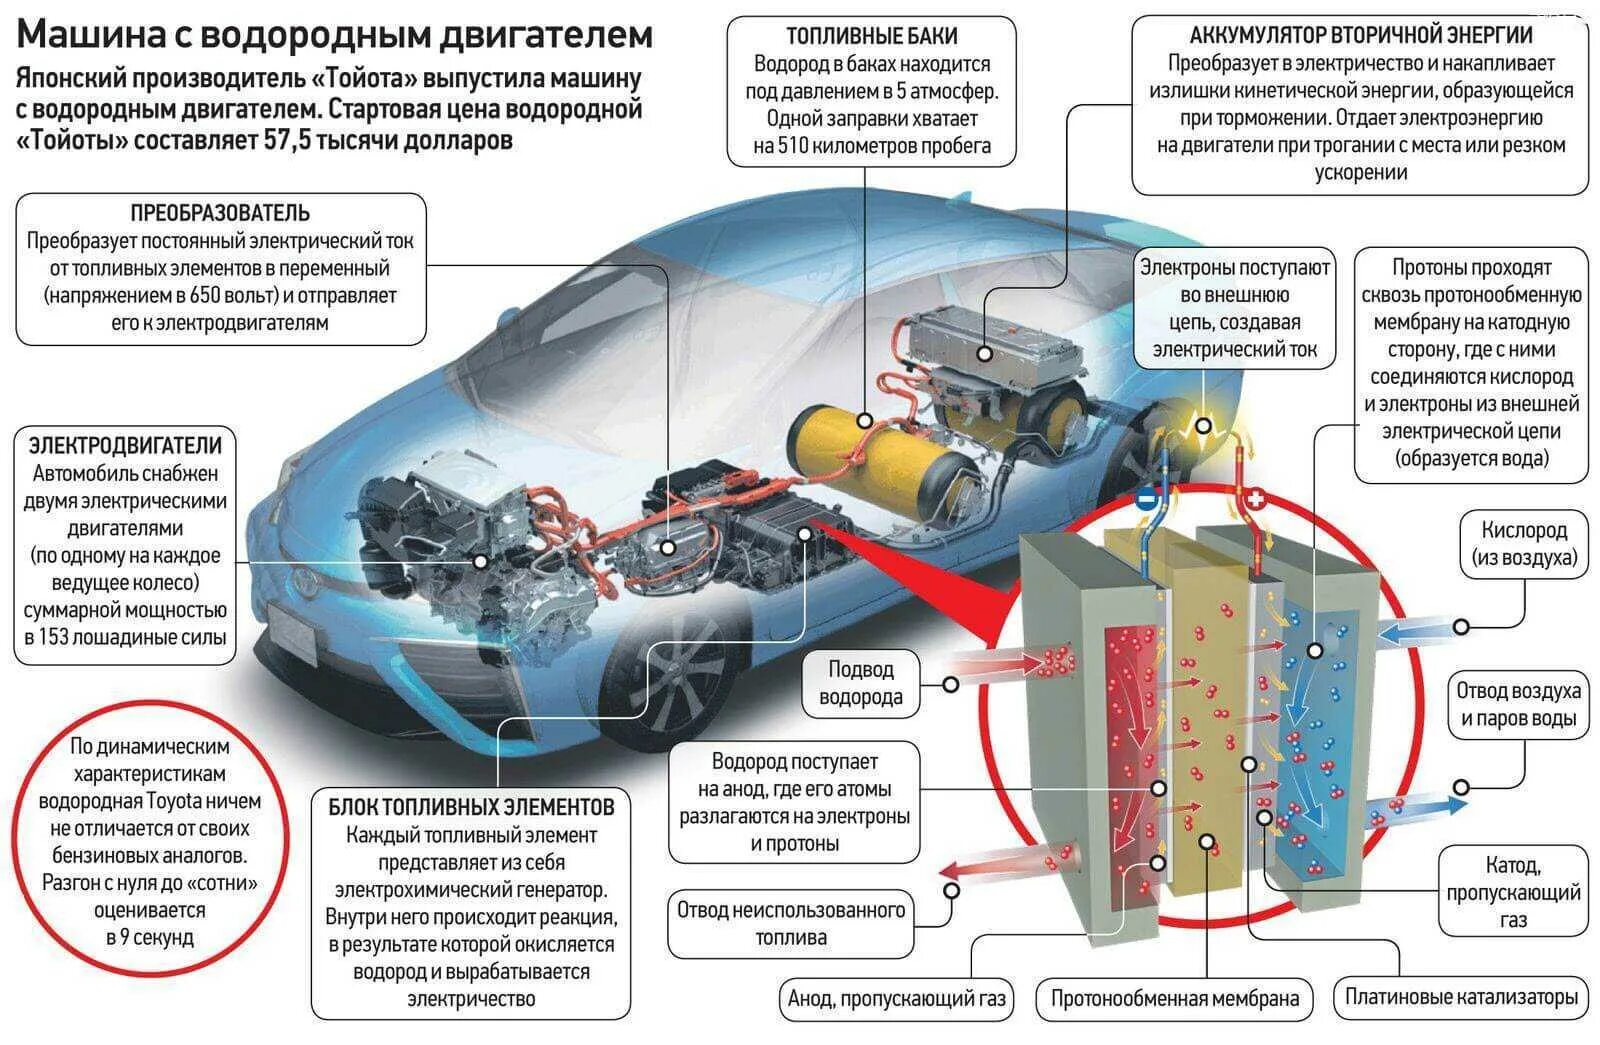 Схема автомобиля на водородном ДВС. Автомобиль на водородных топливных элементах. Схема автомобиля на водородных топливных элементах. Водородный двигатель схема устройства.